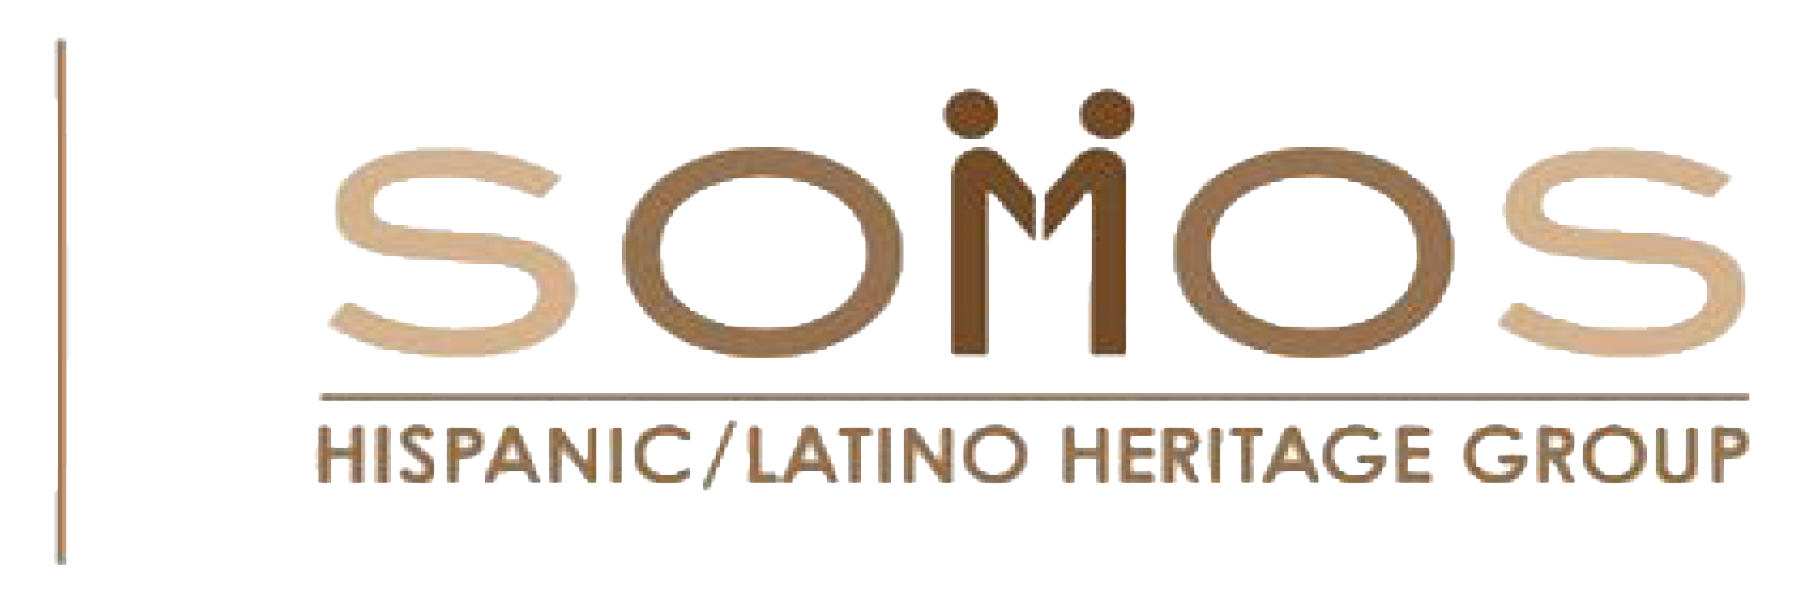 Somos - Hispanic/Latino Heritage Group Logo